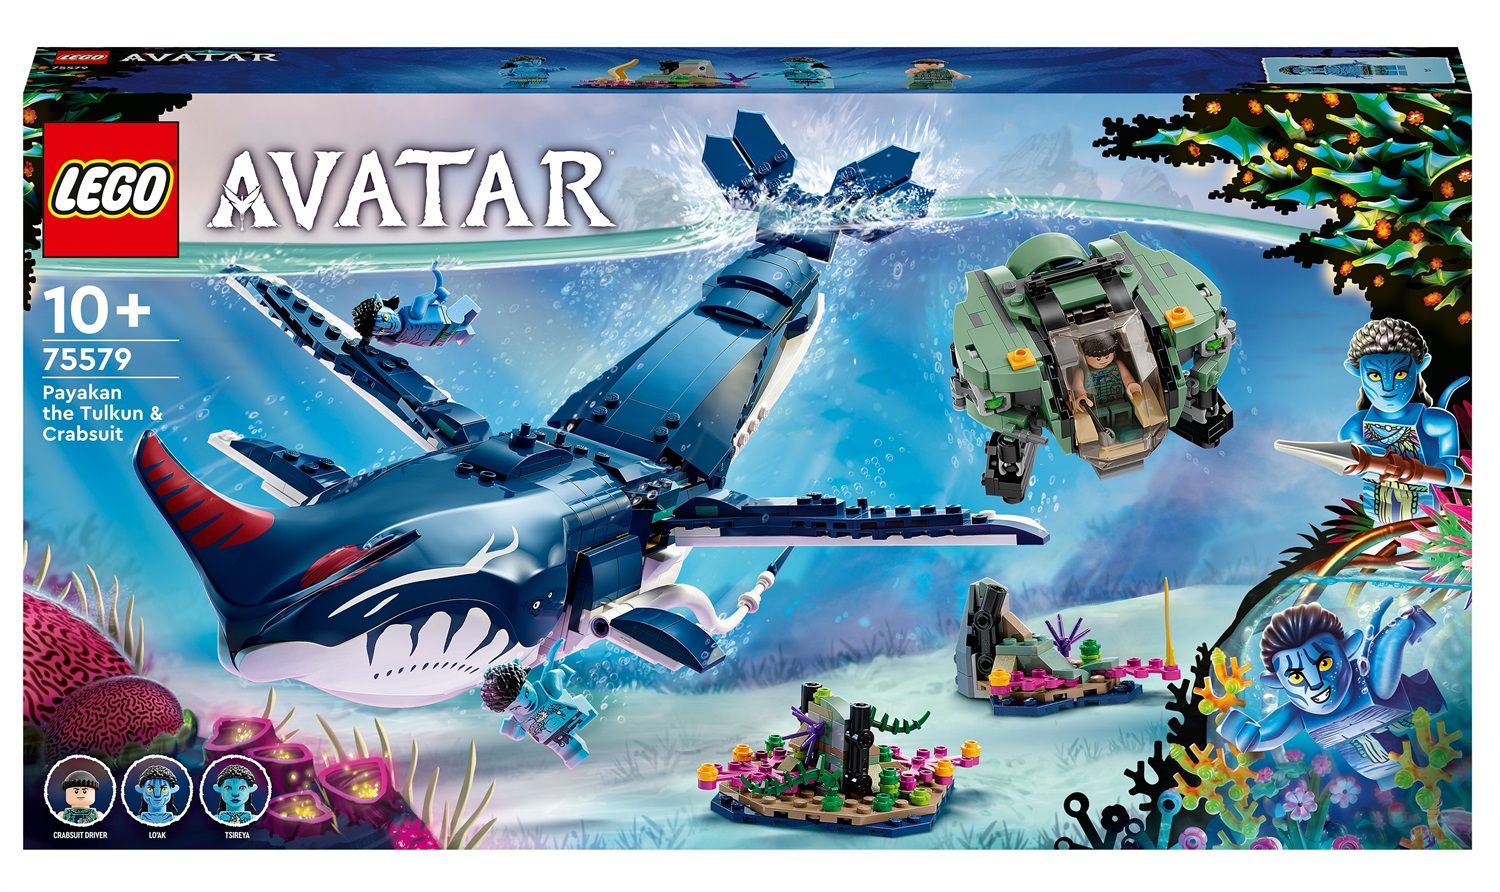 Il nuovo arco nei set LEGO Avatar sembra fare eco alle armi a fuoco rapido